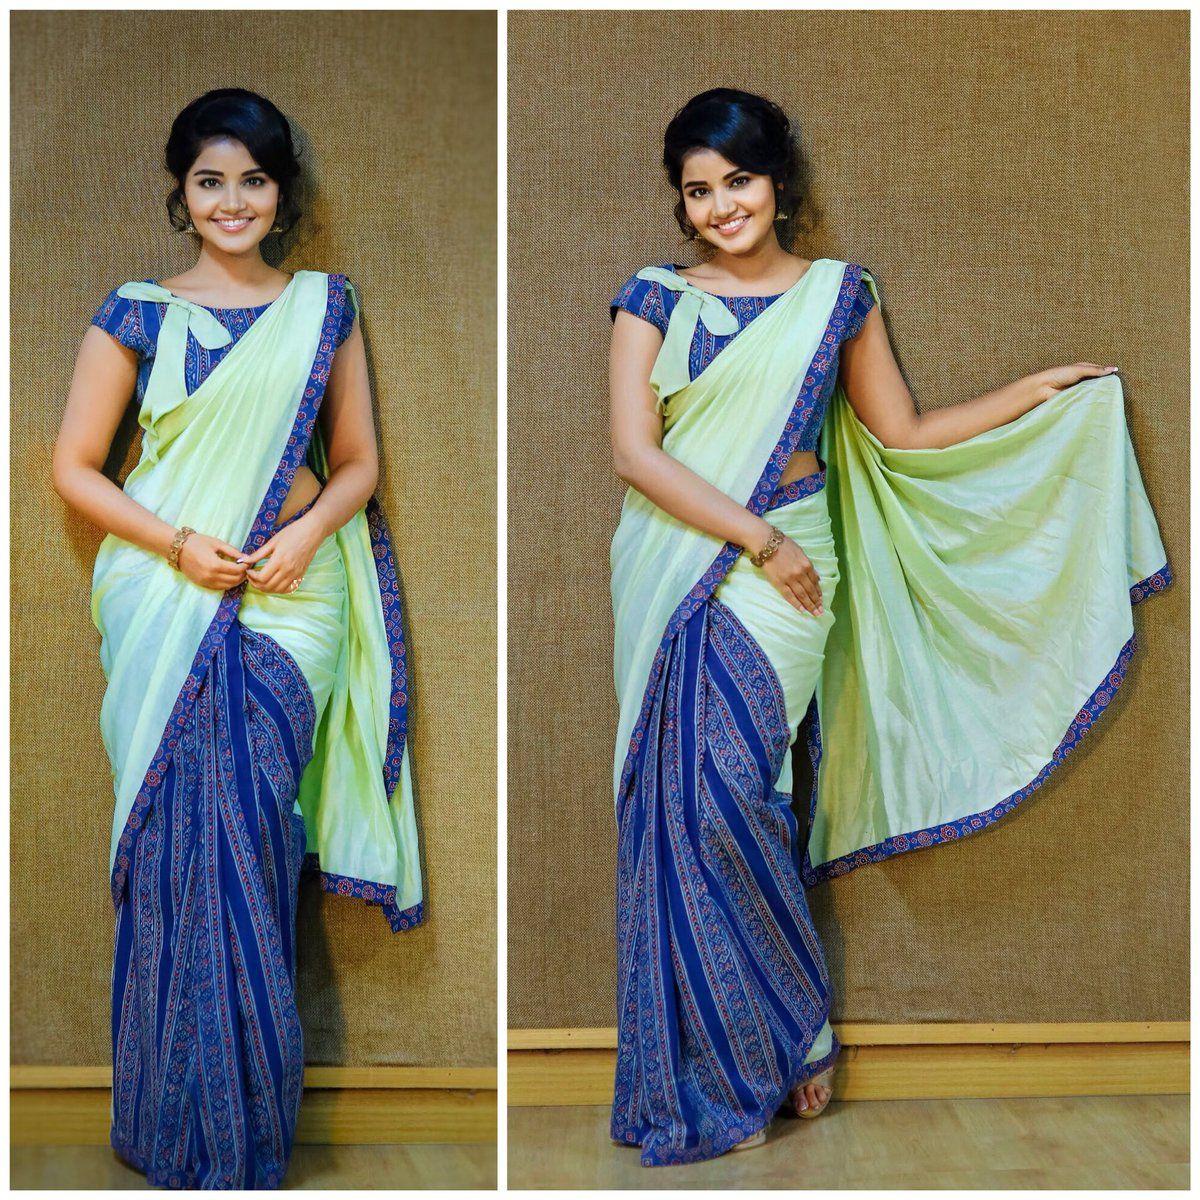 Gorgeous Queen Anupama Parameswaran Latest Pictures